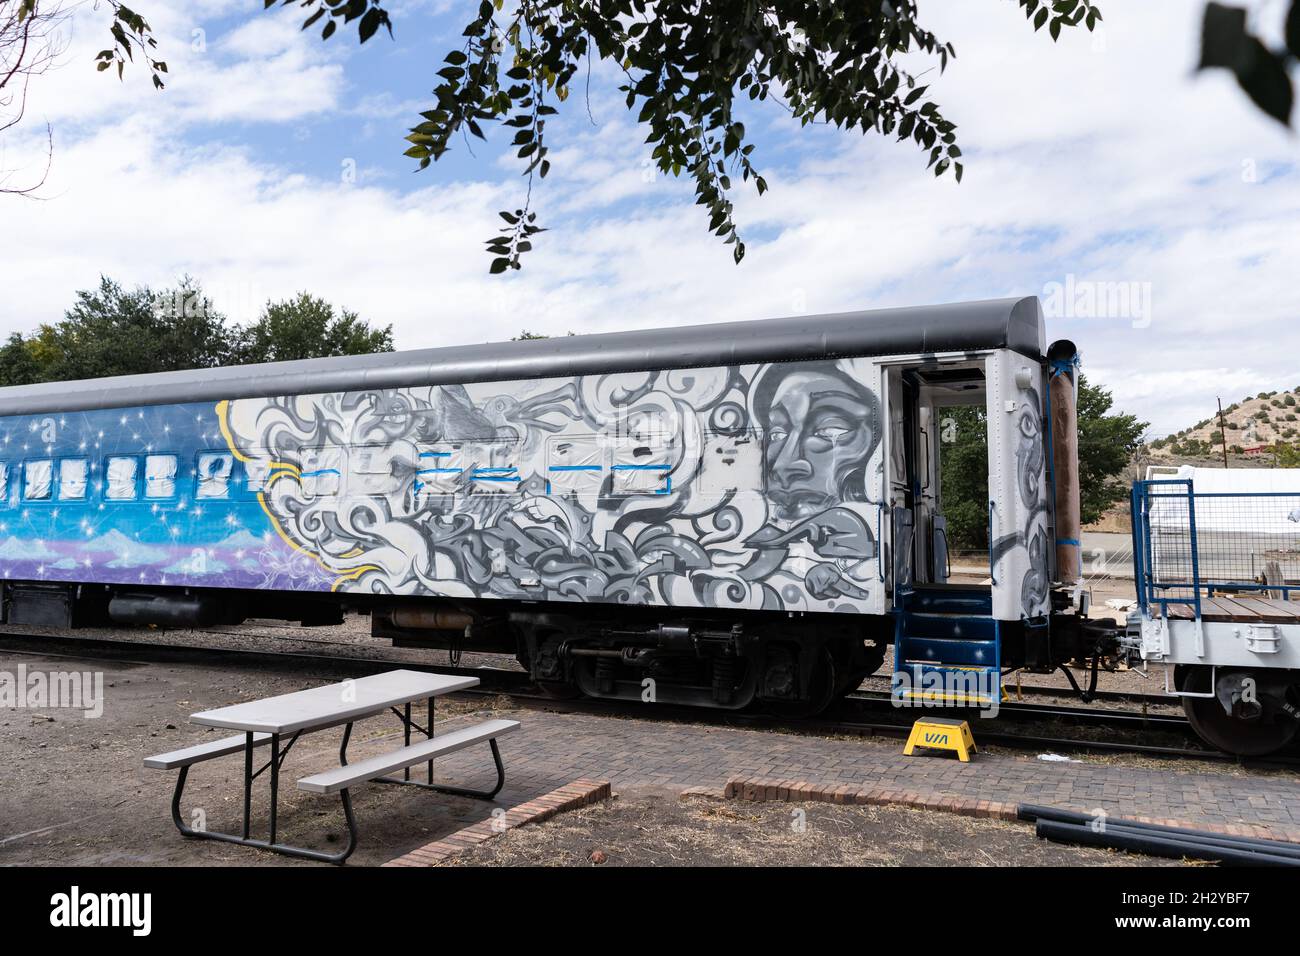 En la estación Amtrak de Lamy, en Lamy, Nuevo México, justo al sur de Santa Fe, se encuentra un vagón de pasajeros pintado de arriba a abajo con arte. La A Canción de Fuego A. Foto de stock